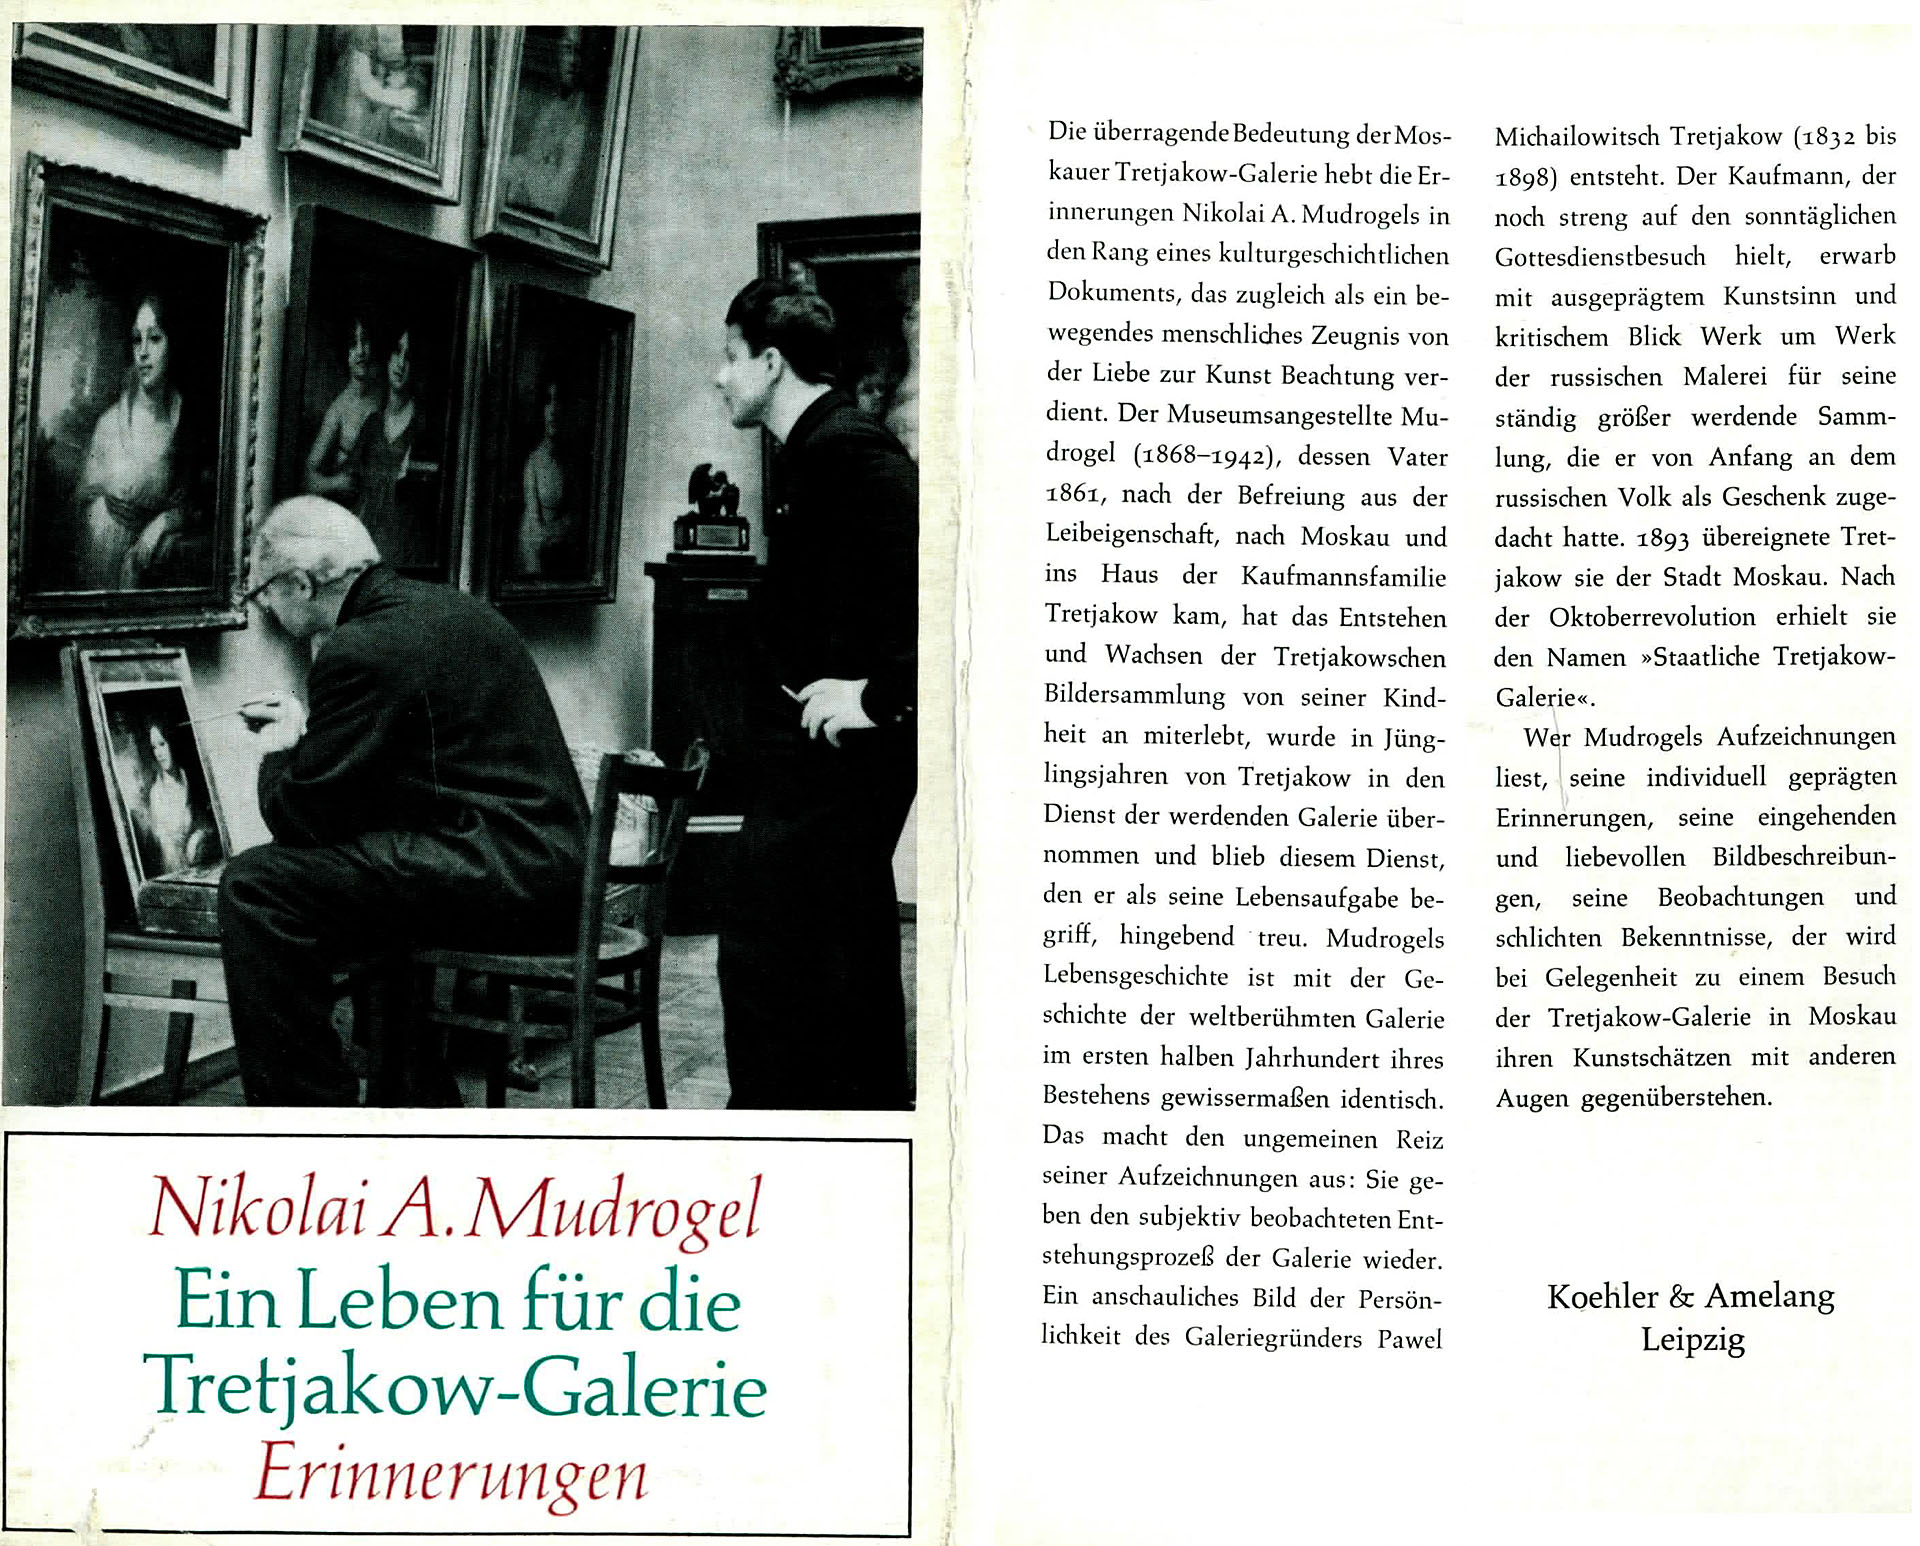 Ein Leben für die Tretjakow - Galerie - Mudrogol, Nikolai A.